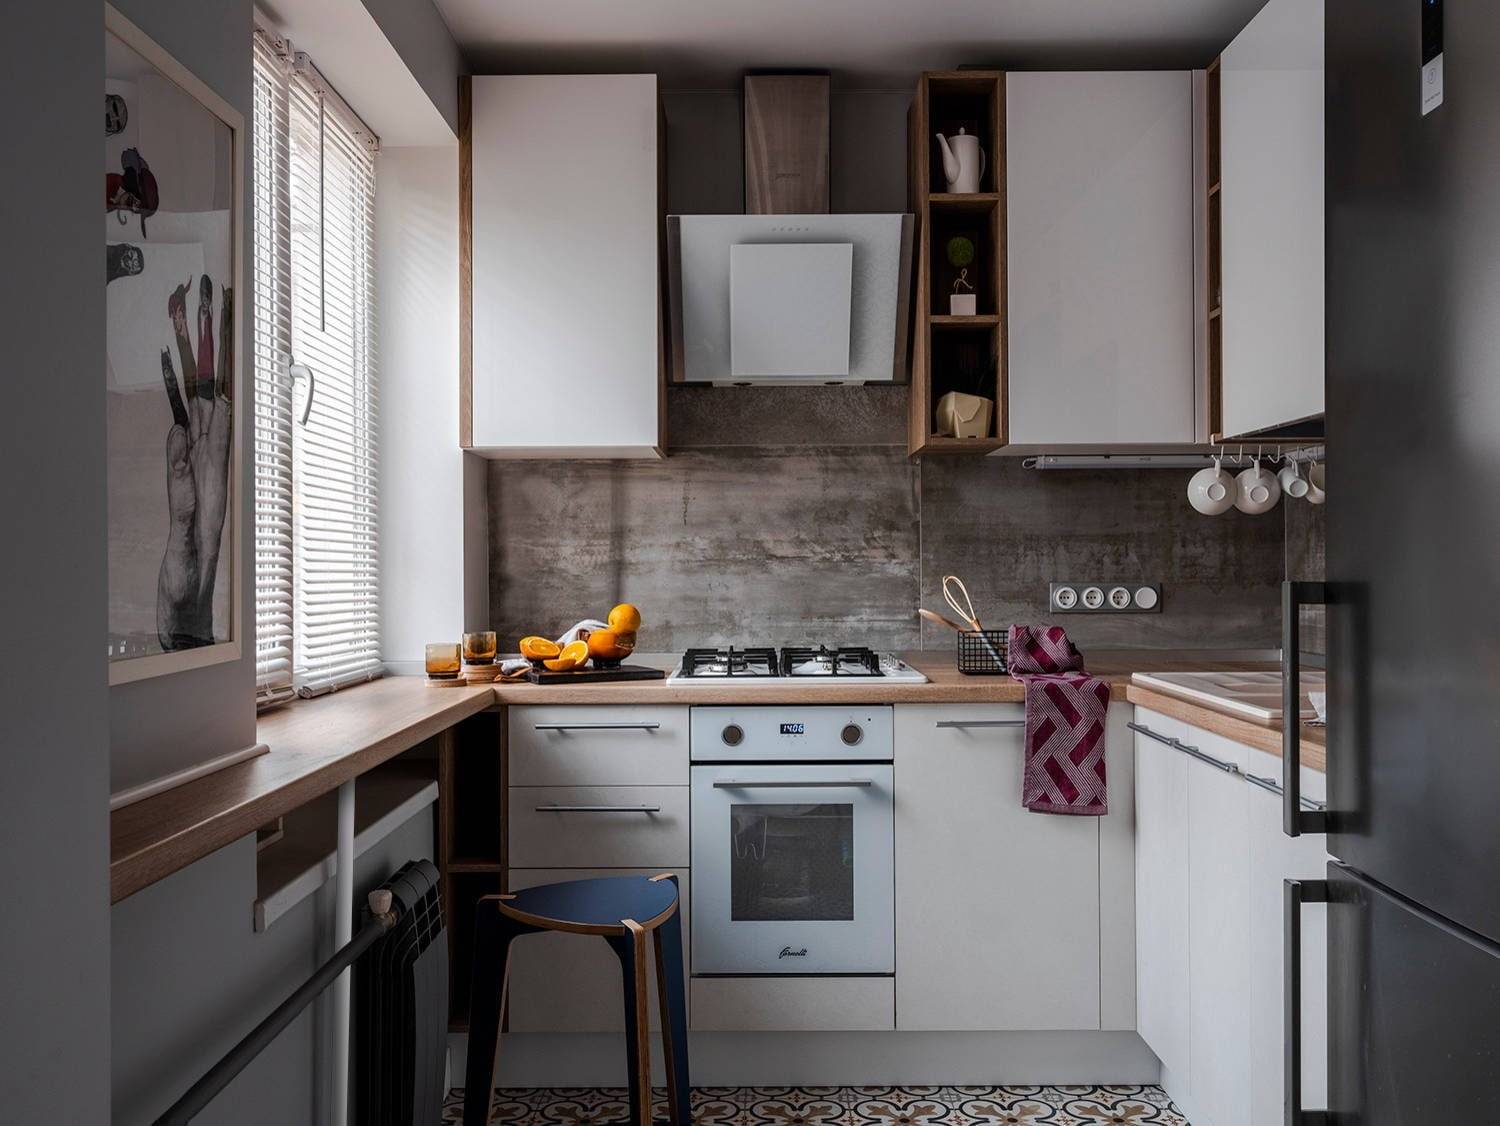 Ремонт кухни 6 кв. м. — примеры лучших вариантов 2020 года. топ-100 фото красивого дизайна в маленькой кухне